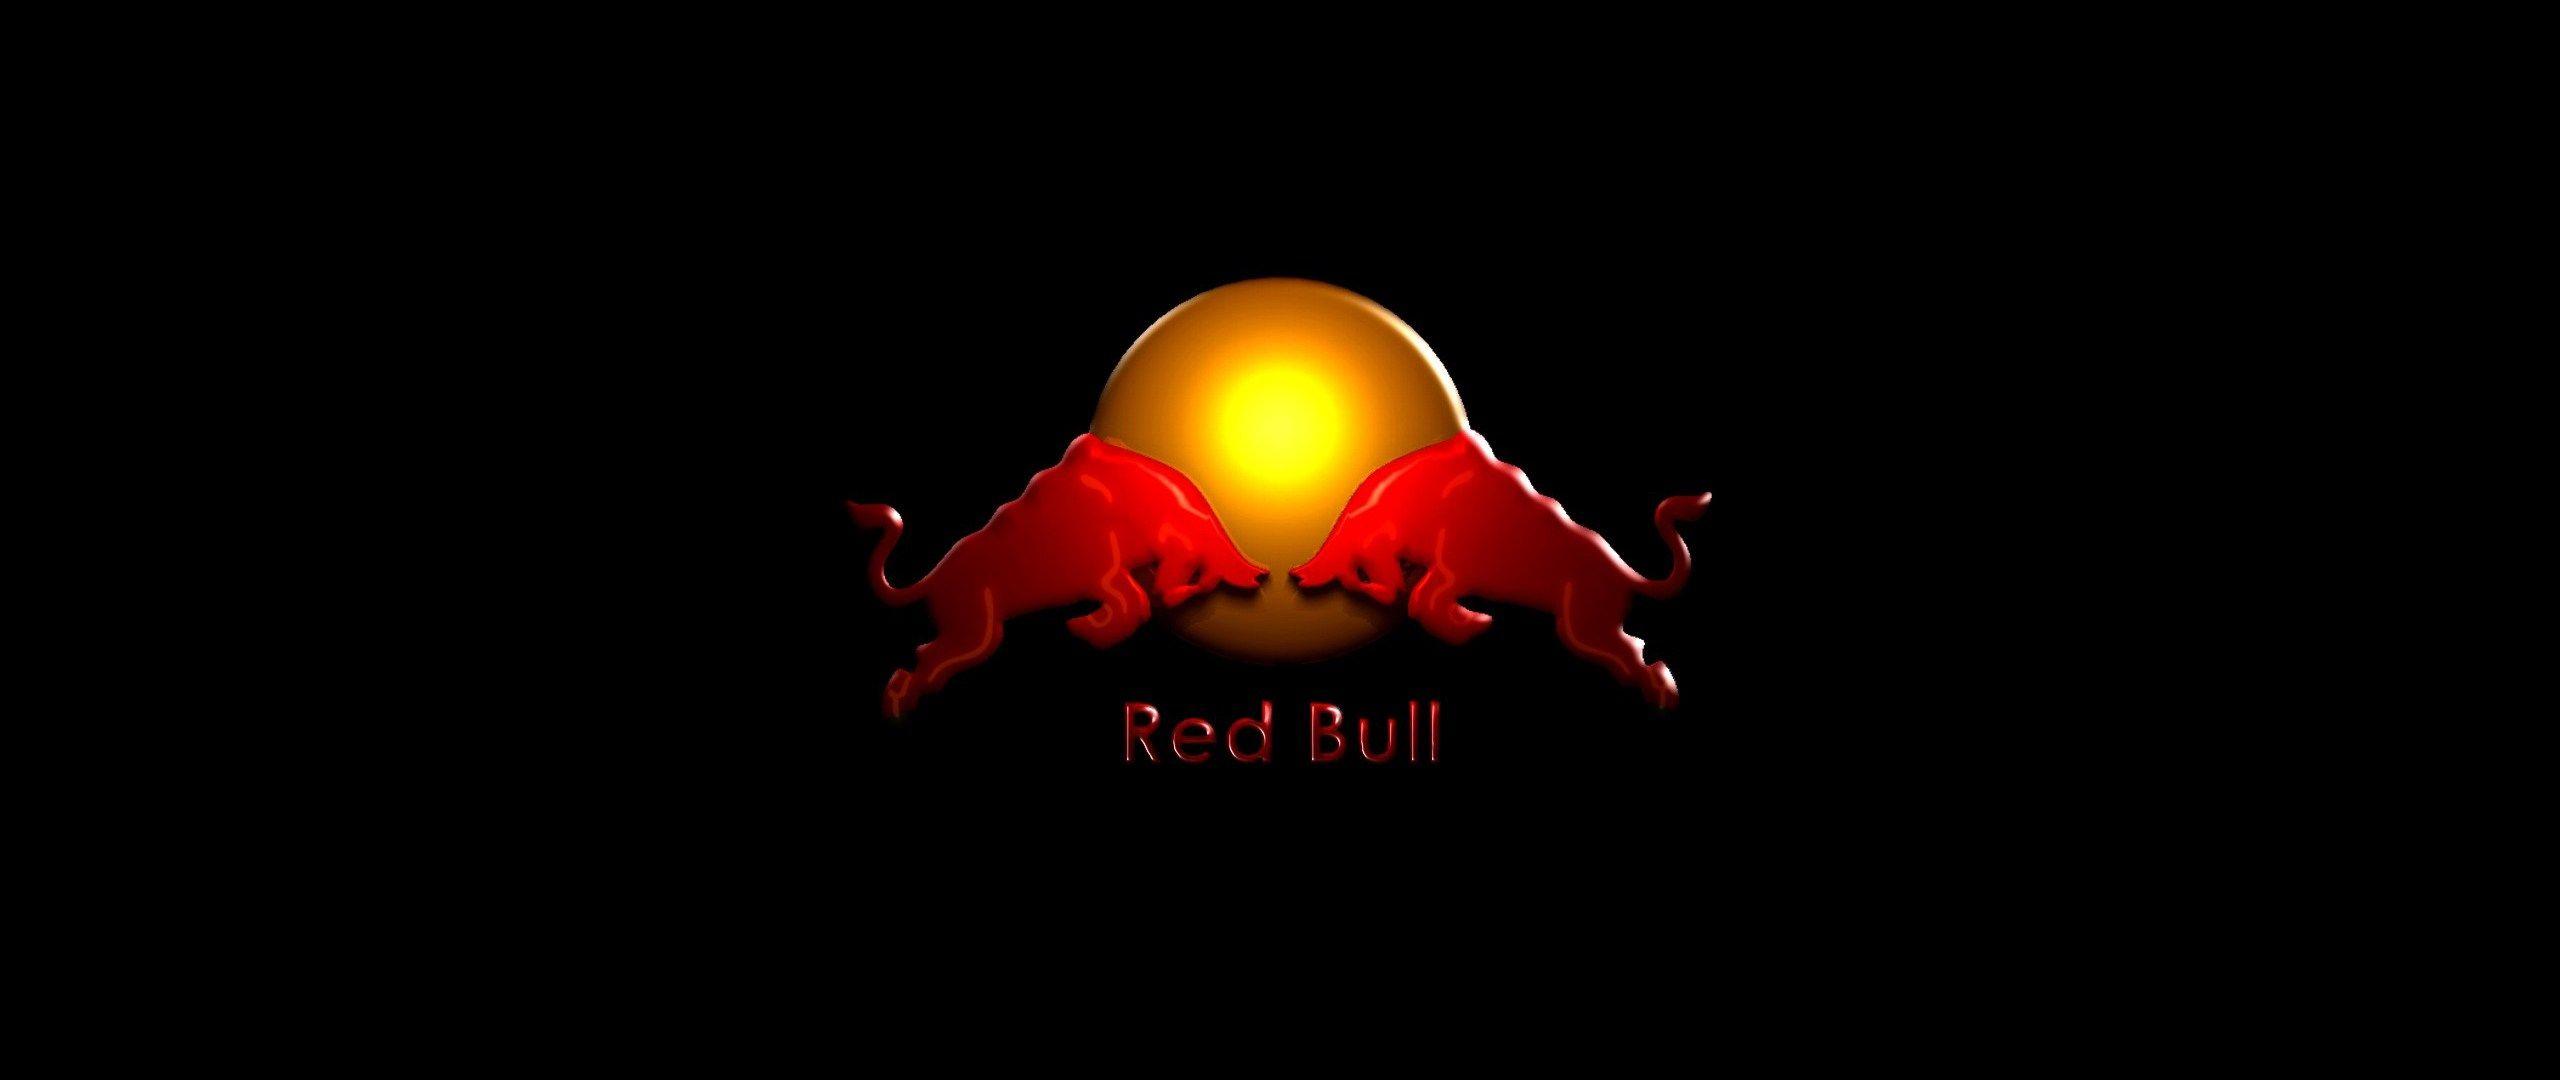 Cool Red Bull Logo - Cool Red Bull Energy Drink Logo